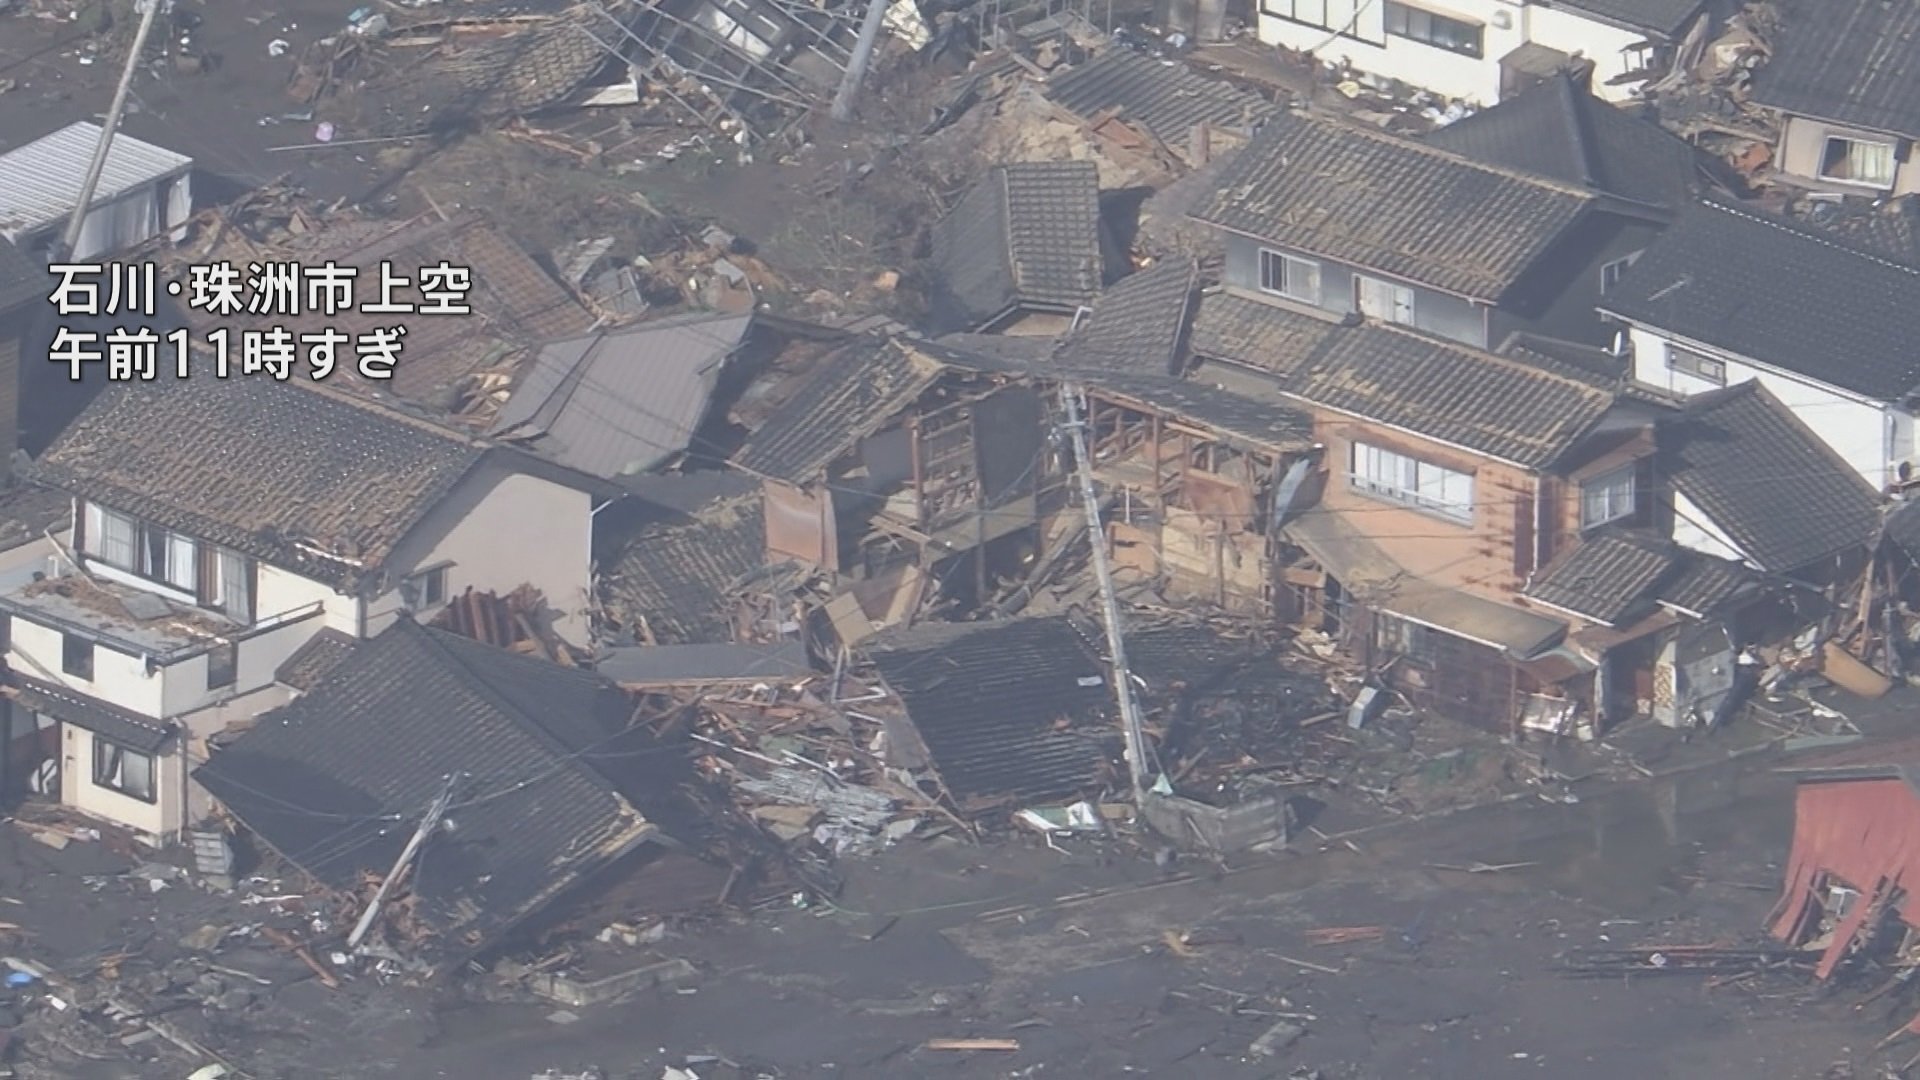 【画像】能登半島地震で地割れした輪島中学校のグラウンドがこちら